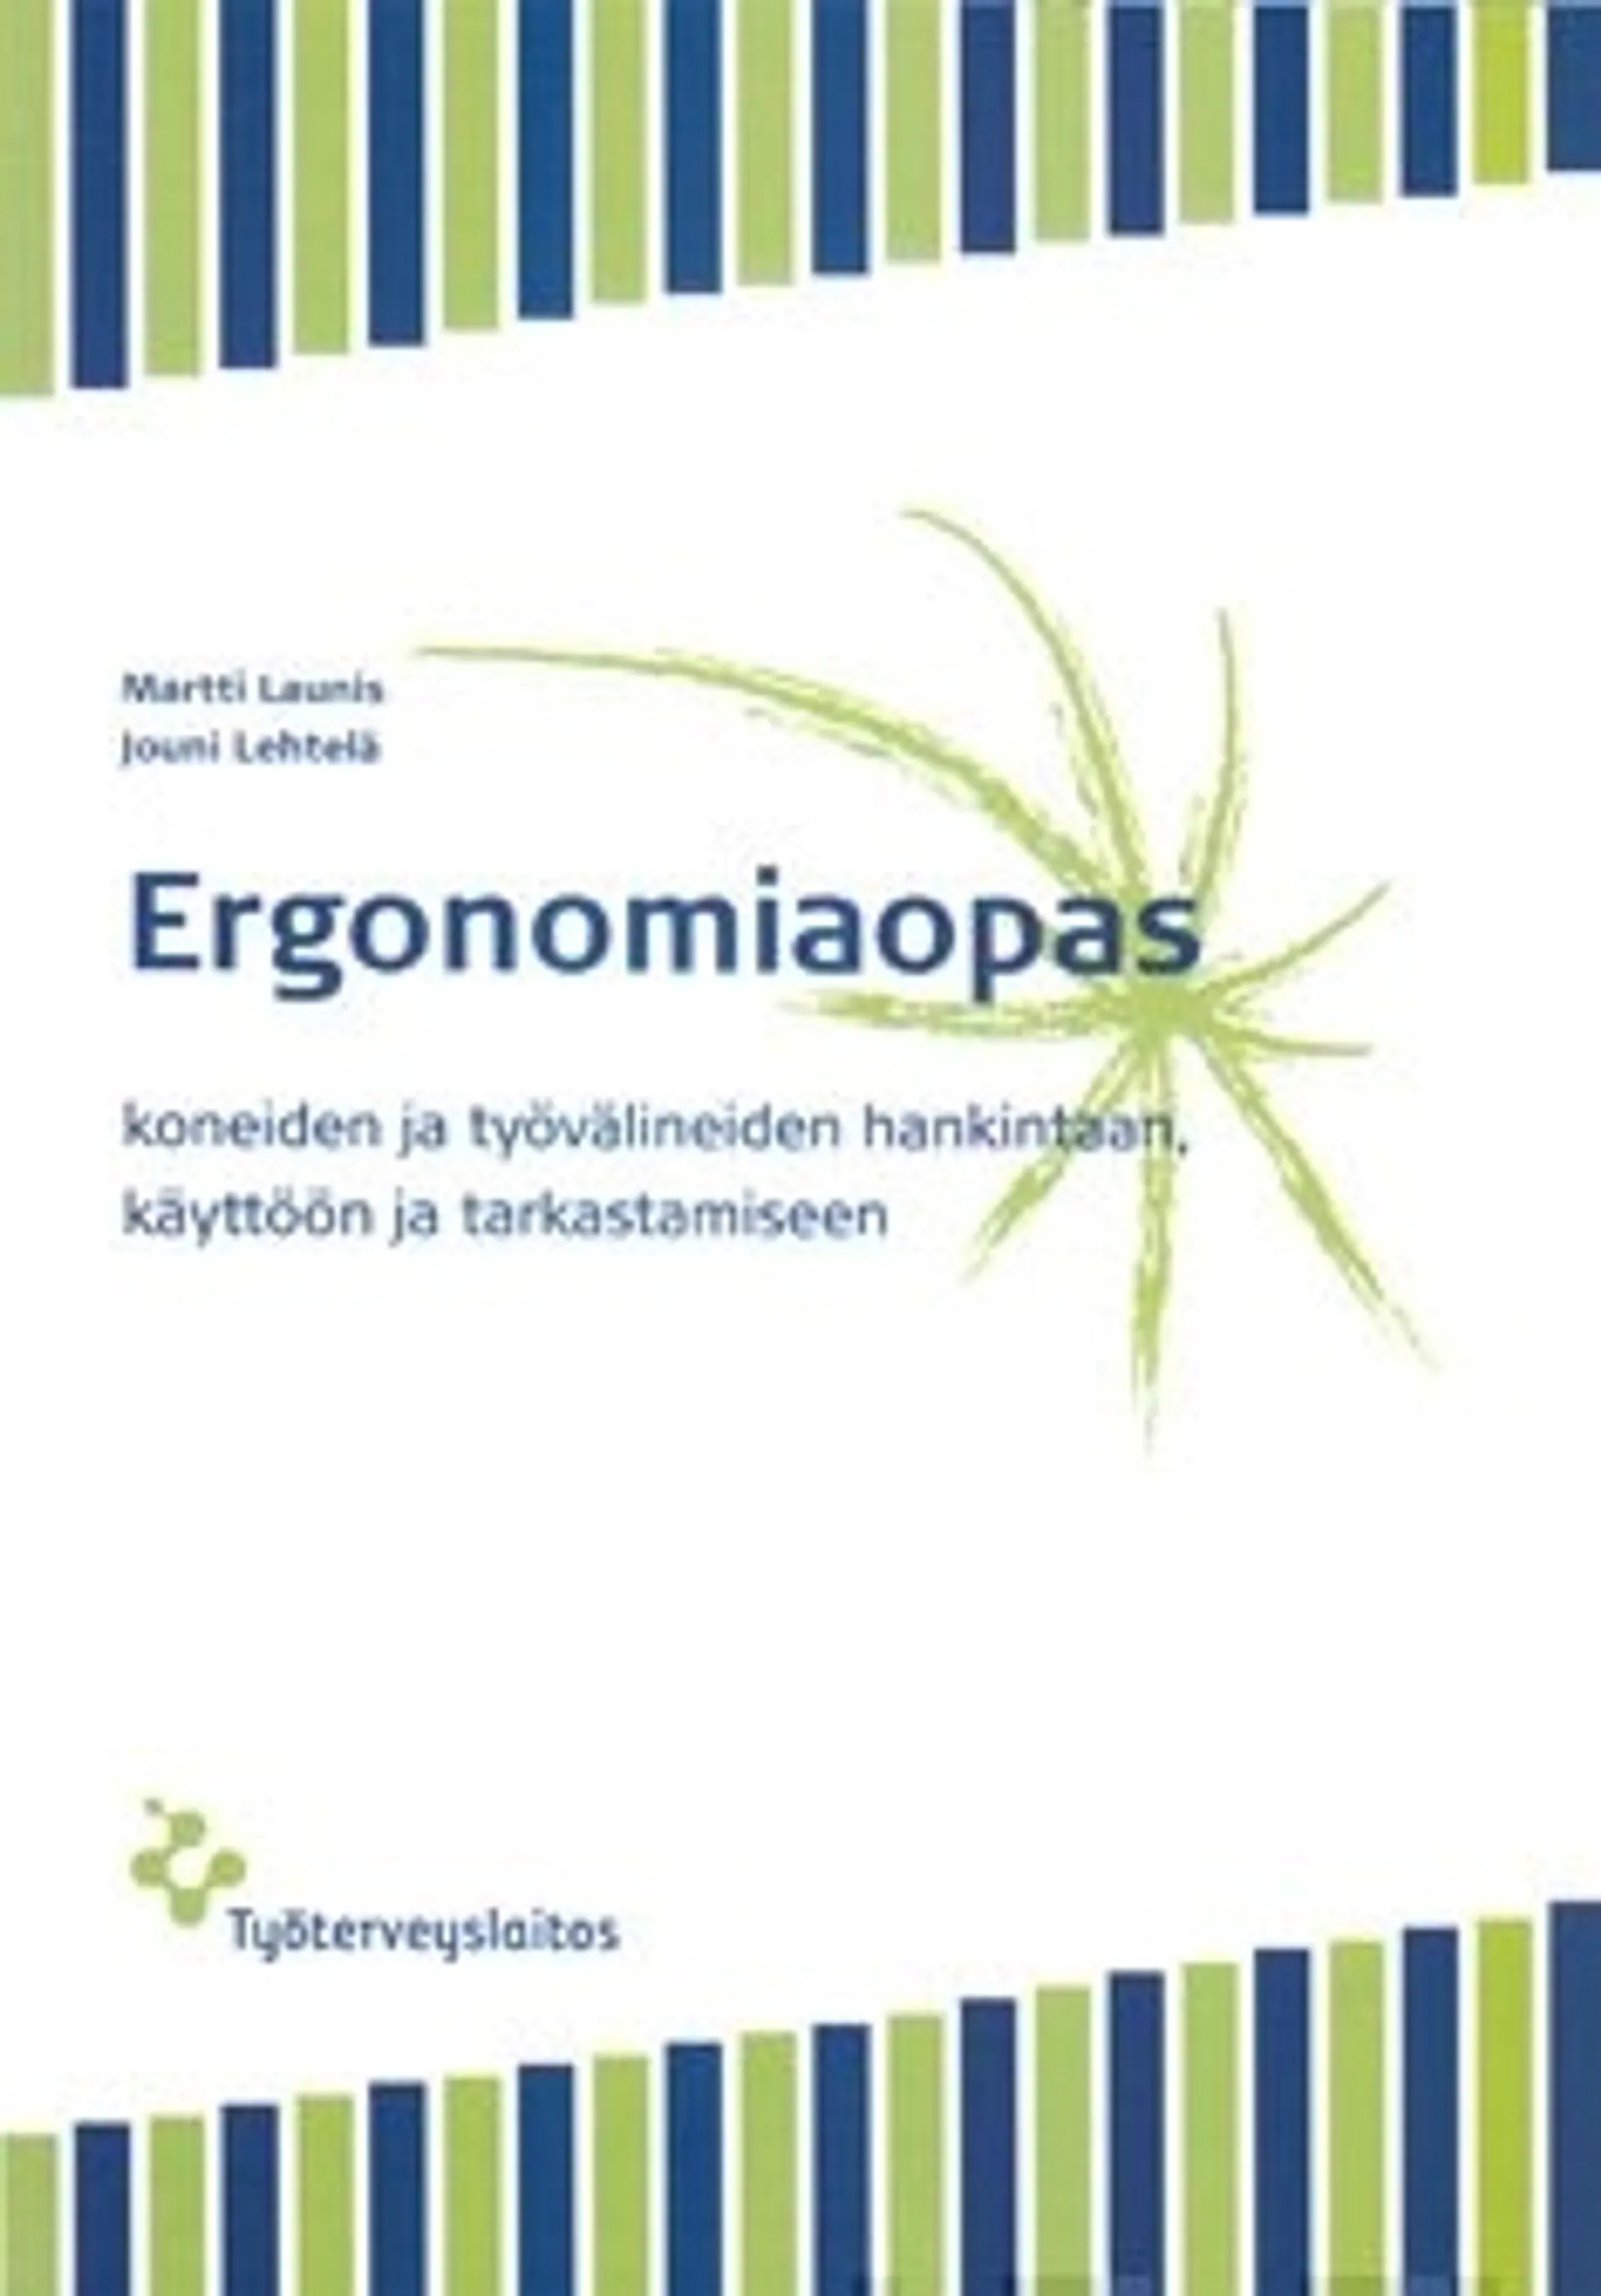 Ergonomiaopas